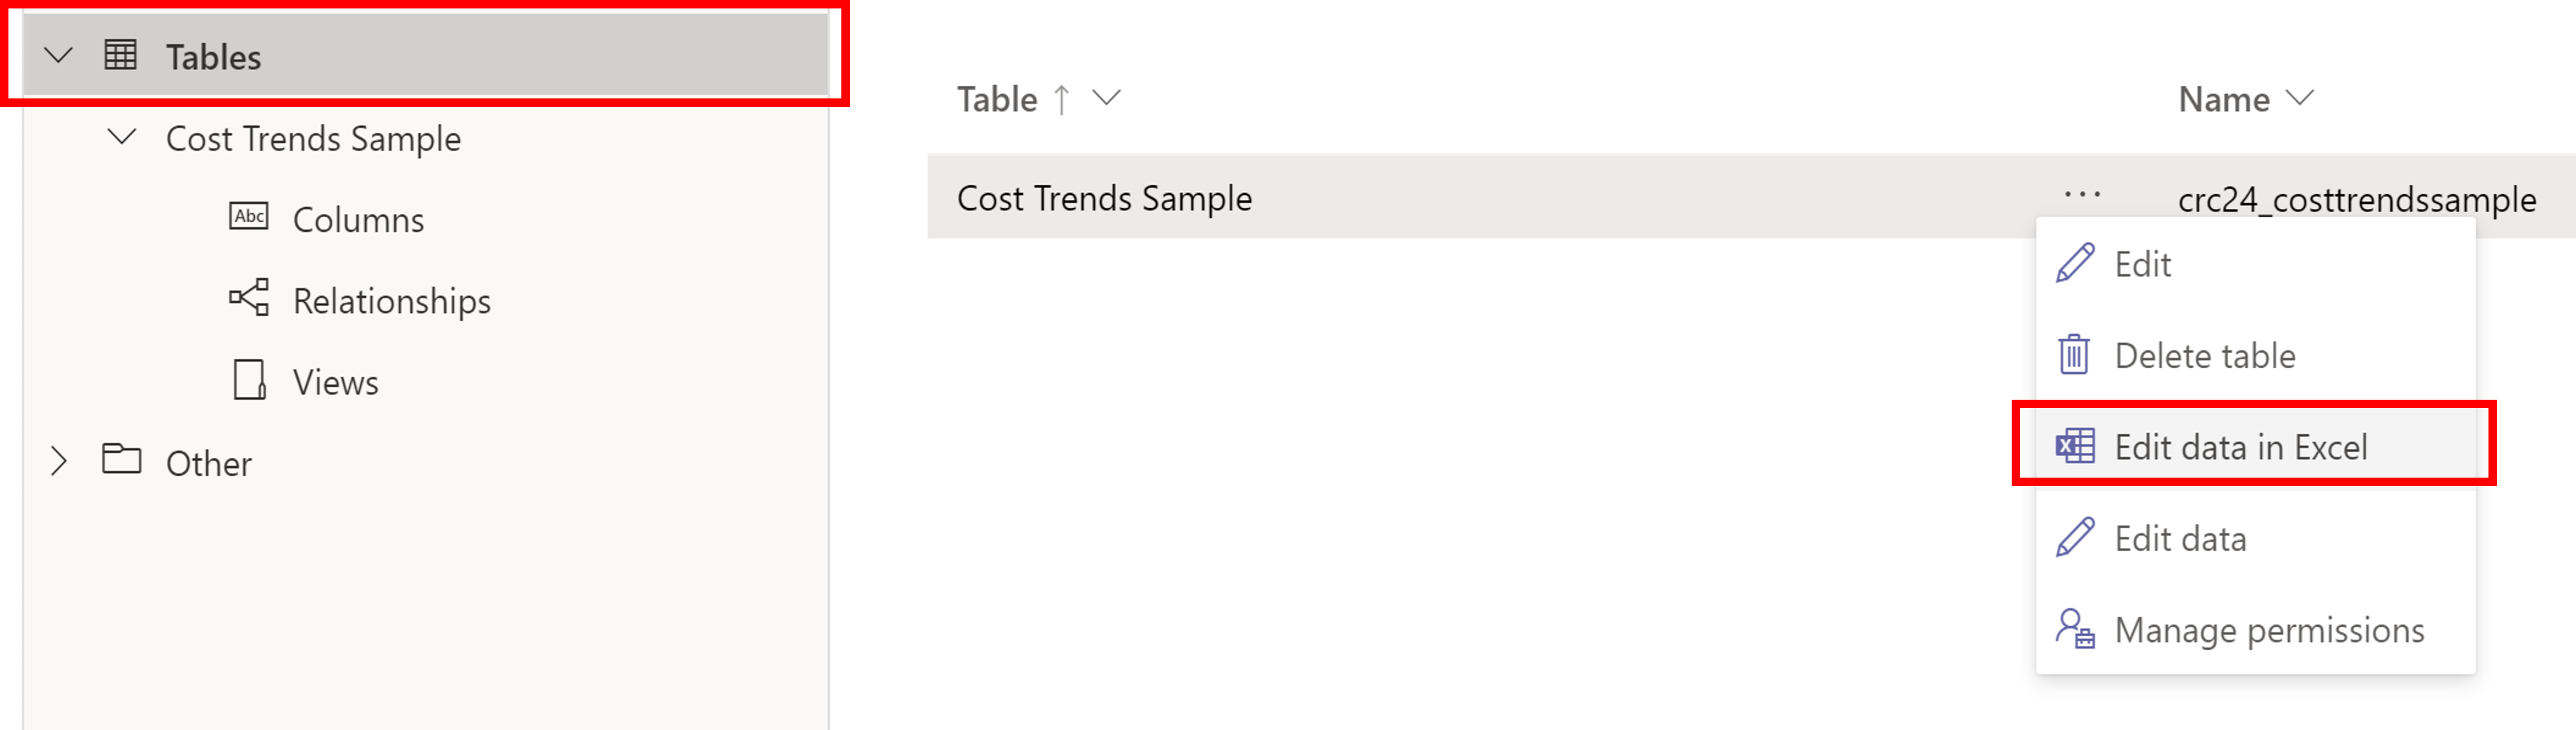 لقطة شاشة لمربع حوار جداول Power Apps مع مستطيل حول الجداول وتحرير البيانات فِي Excel.